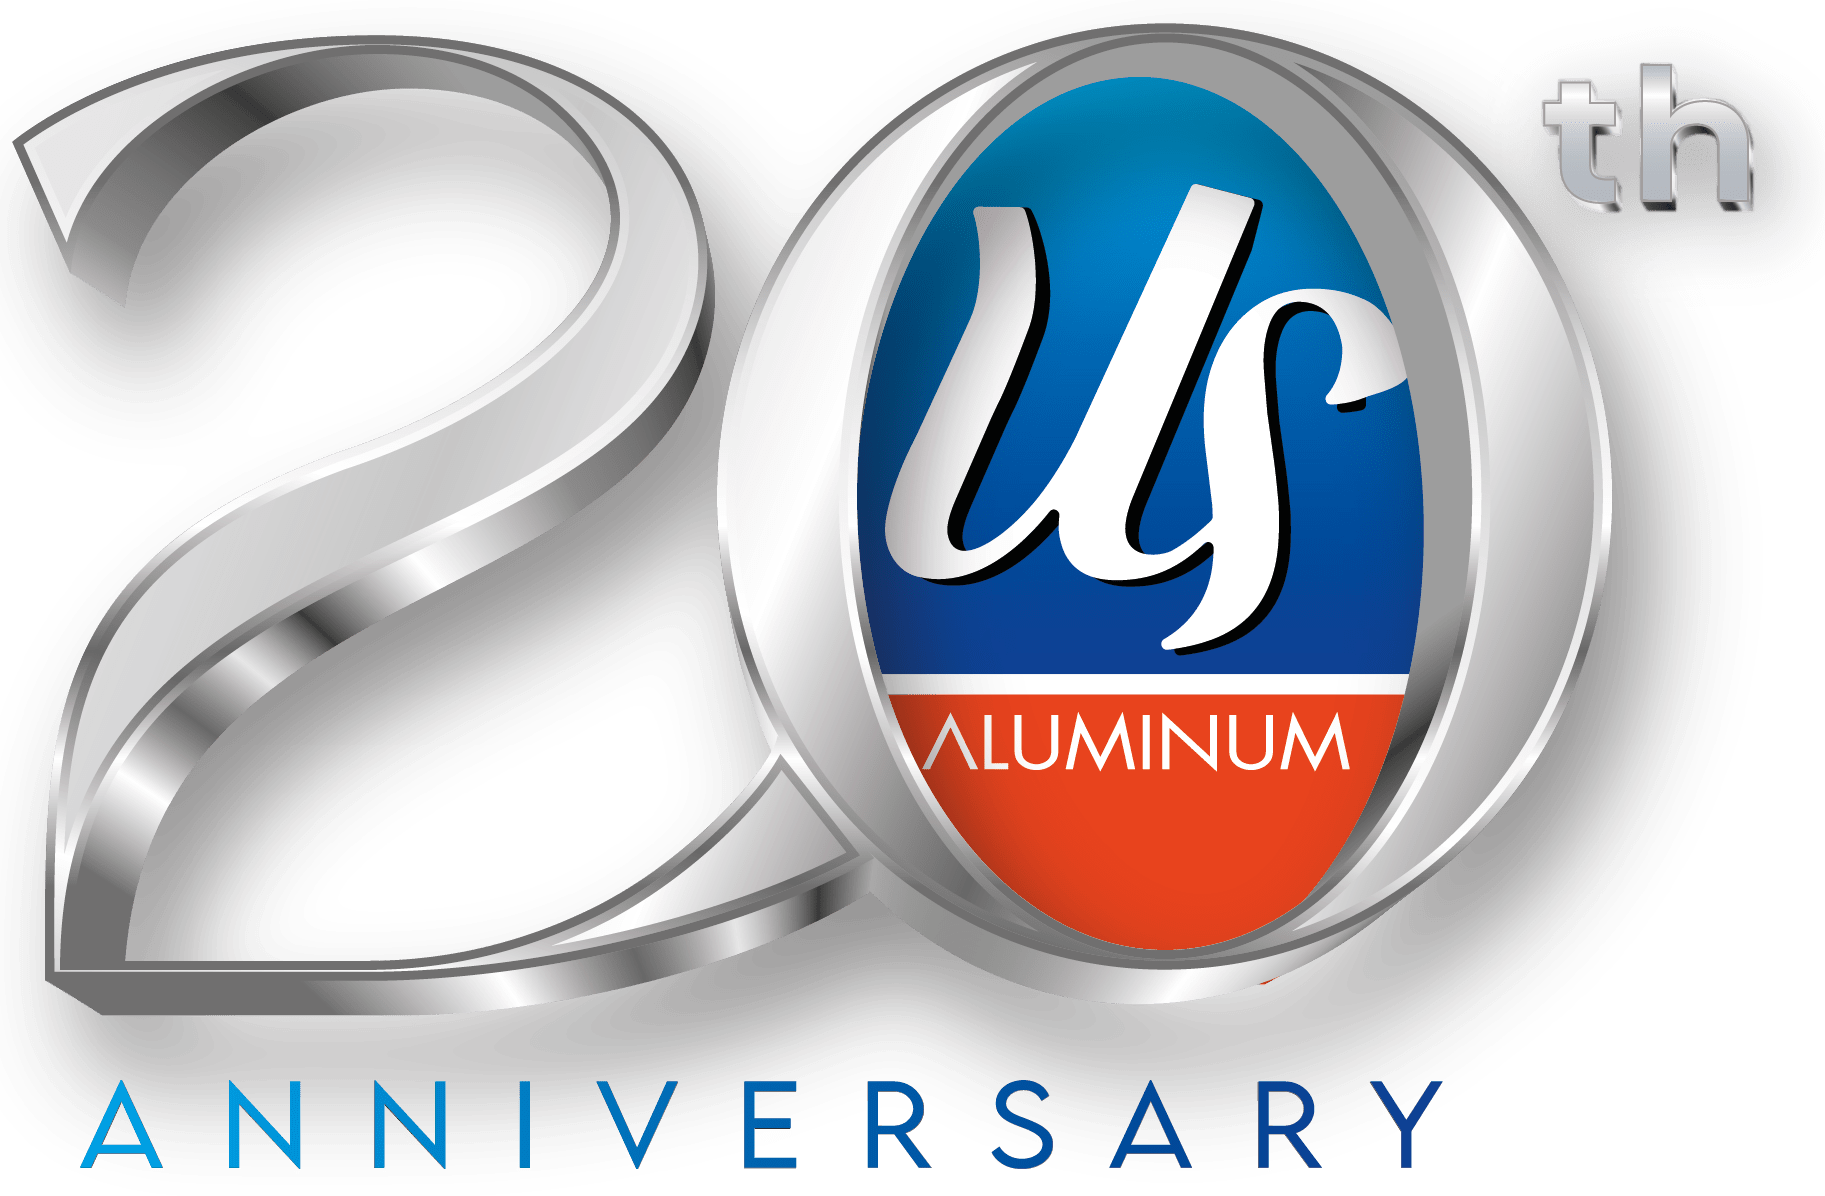 US Aluminum